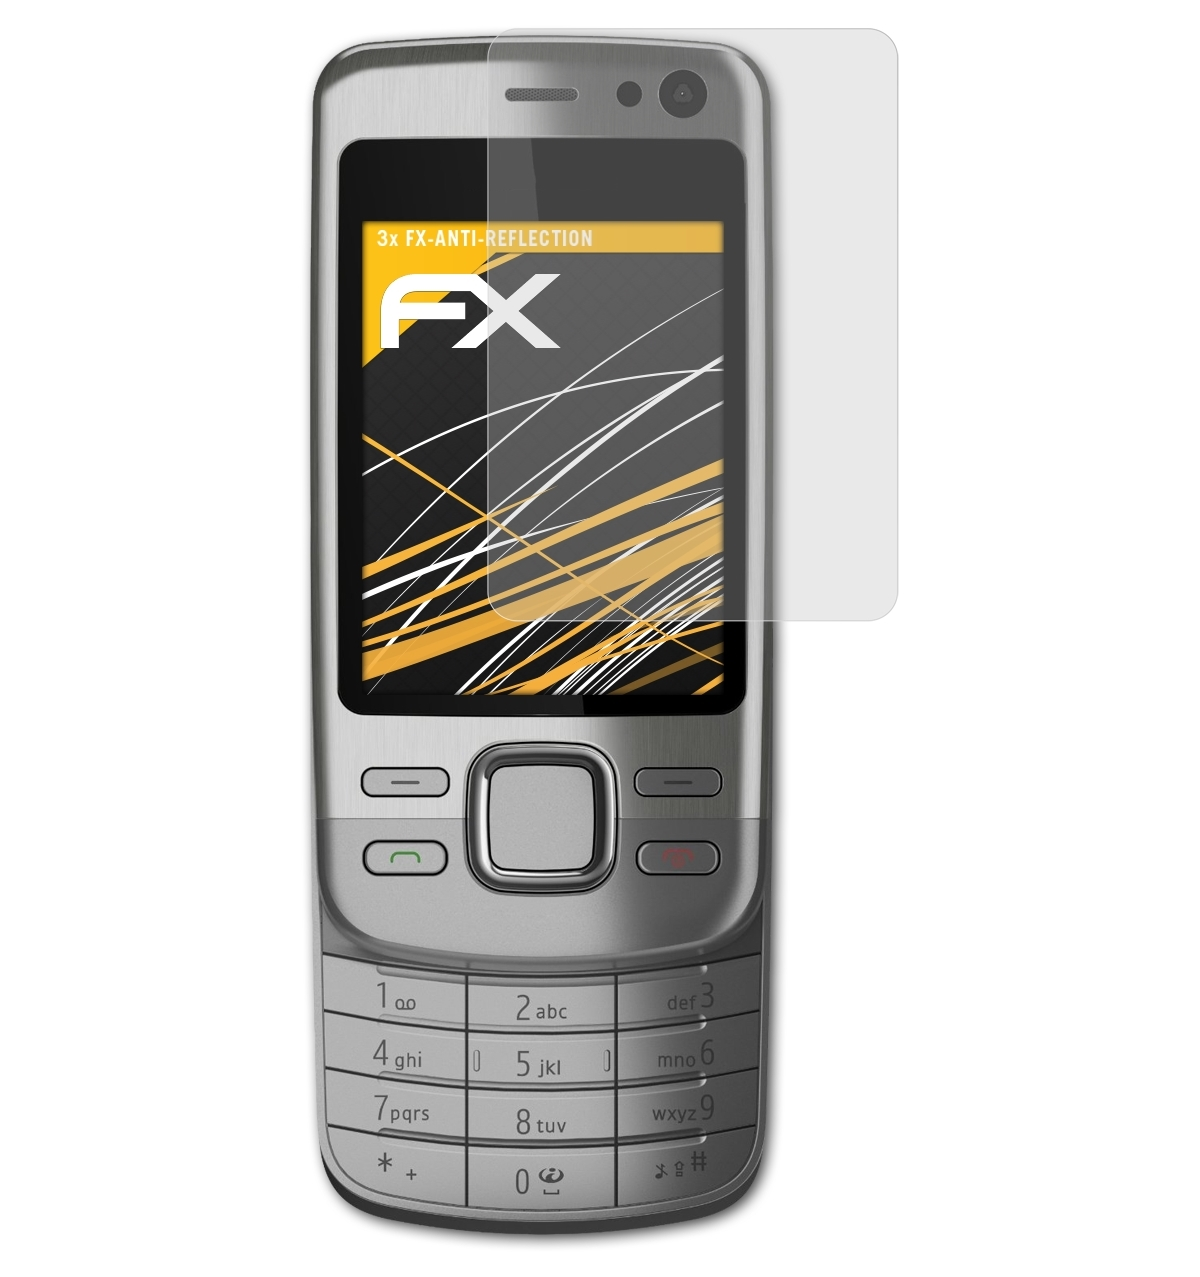 Slide) ATFOLIX FX-Antireflex Displayschutz(für 6600i 3x Nokia